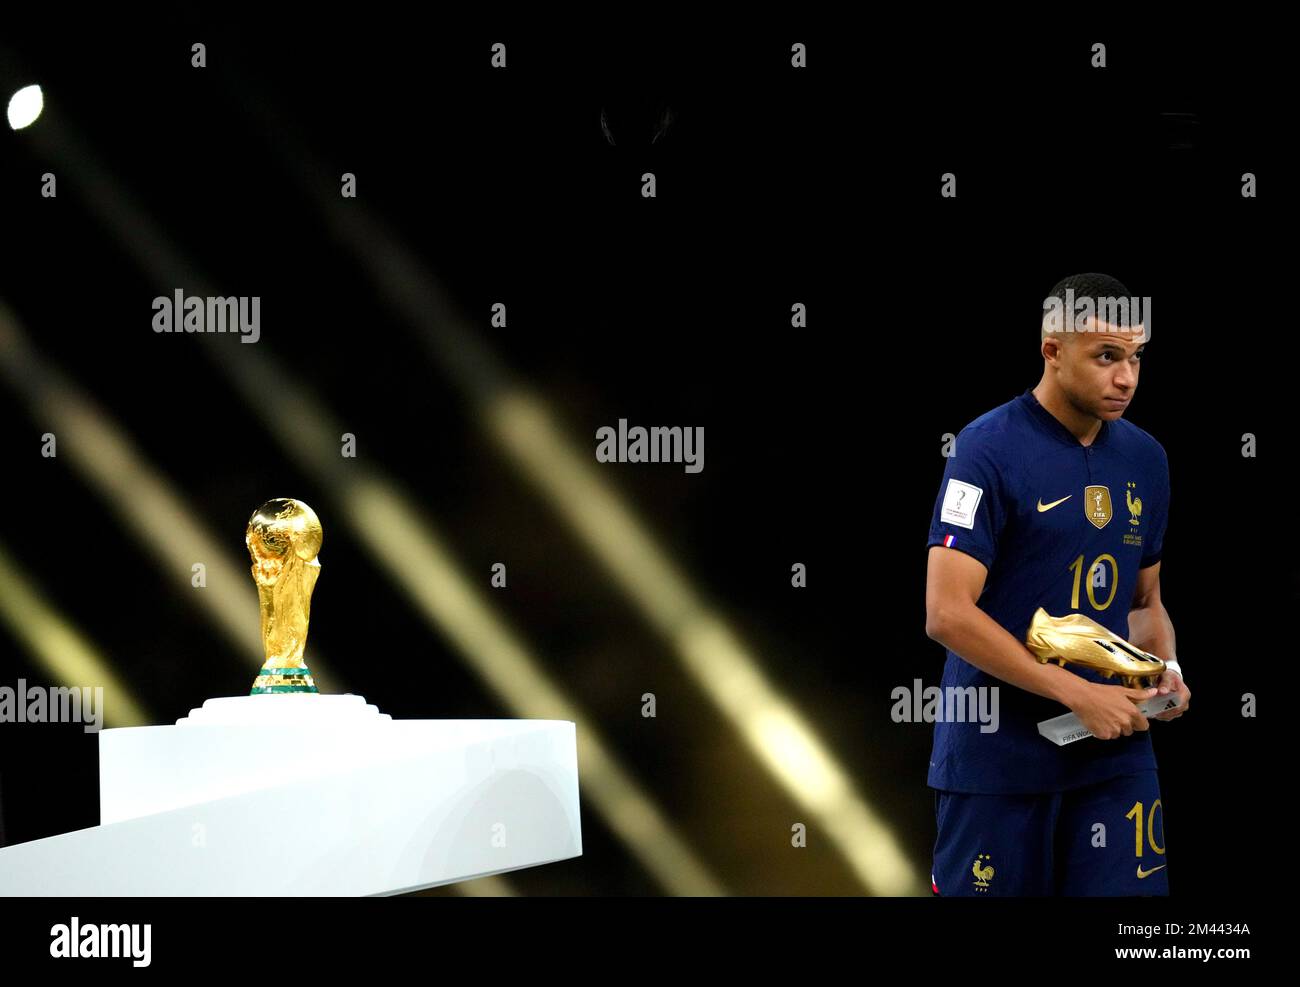 Kylian Mbappe, in Francia, supera il trofeo della Coppa del mondo FIFA dopo essere stato presentato con la scarpa d'oro dopo la sconfitta nella finale della Coppa del mondo FIFA allo stadio di Lusail, Qatar. Data immagine: Domenica 18 dicembre 2022. Foto Stock